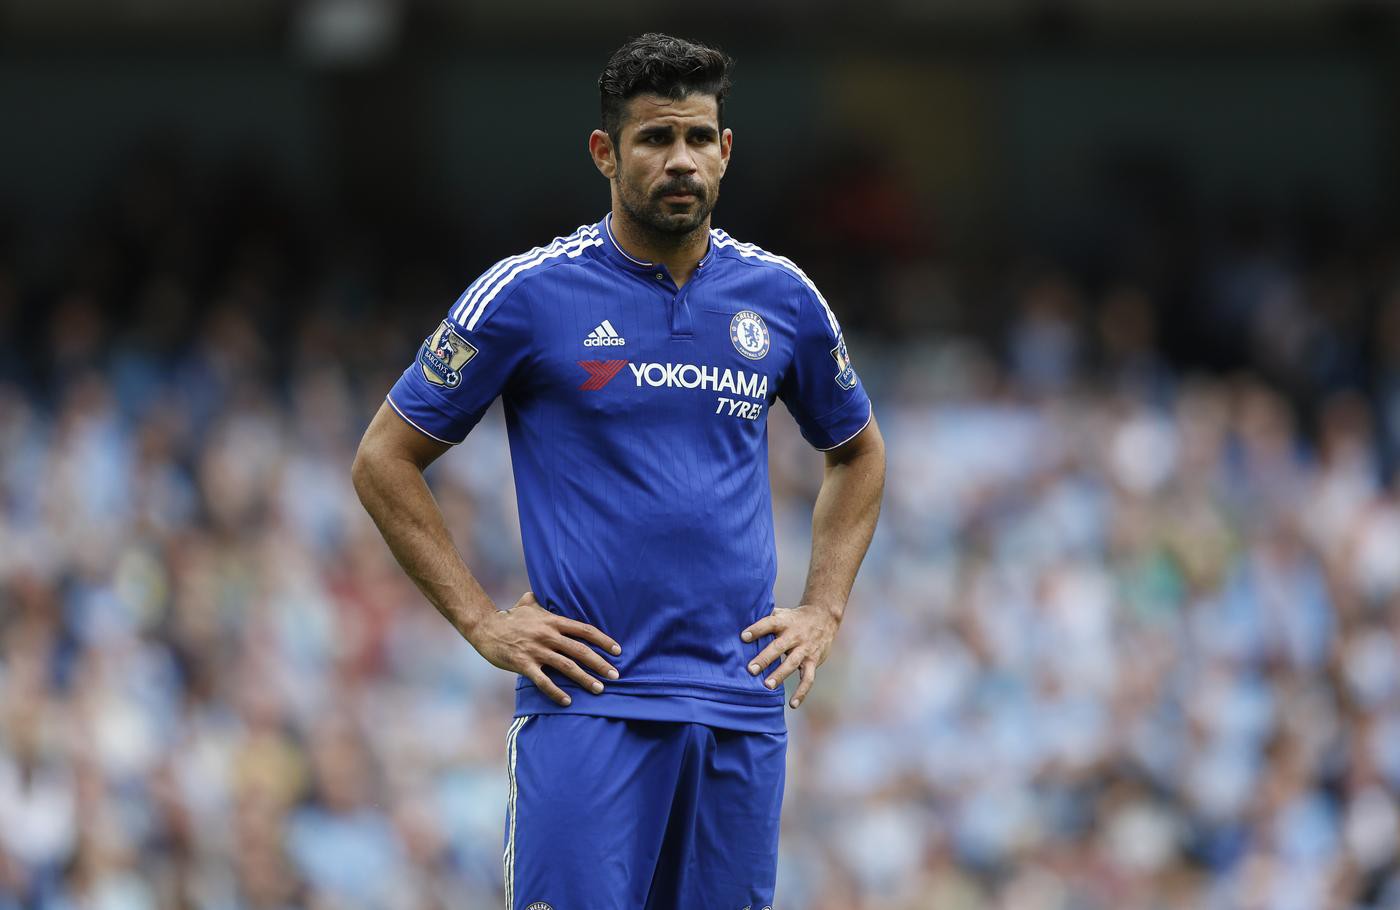 Thay vì tập trung thi đấu và ghi bàn, Costa đang trở thành một ác quỷ trong mắt các đối thủ.